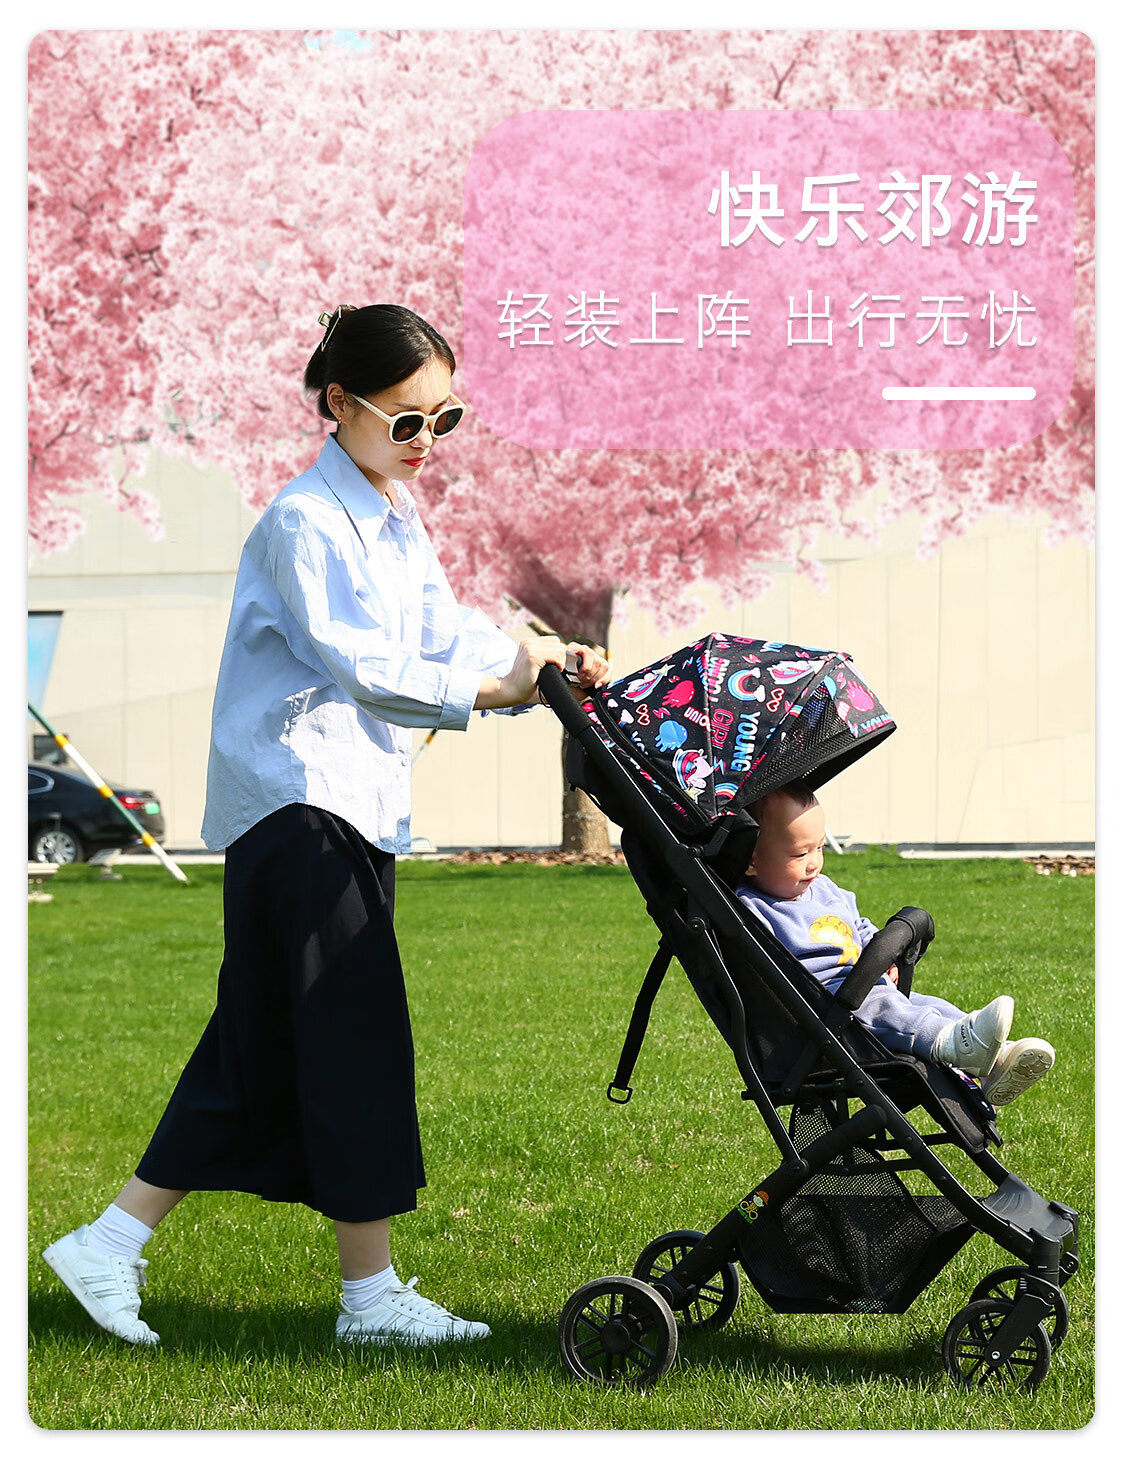 年轻女子推着婴儿车散步-蓝牛仔影像-中国原创广告影像素材